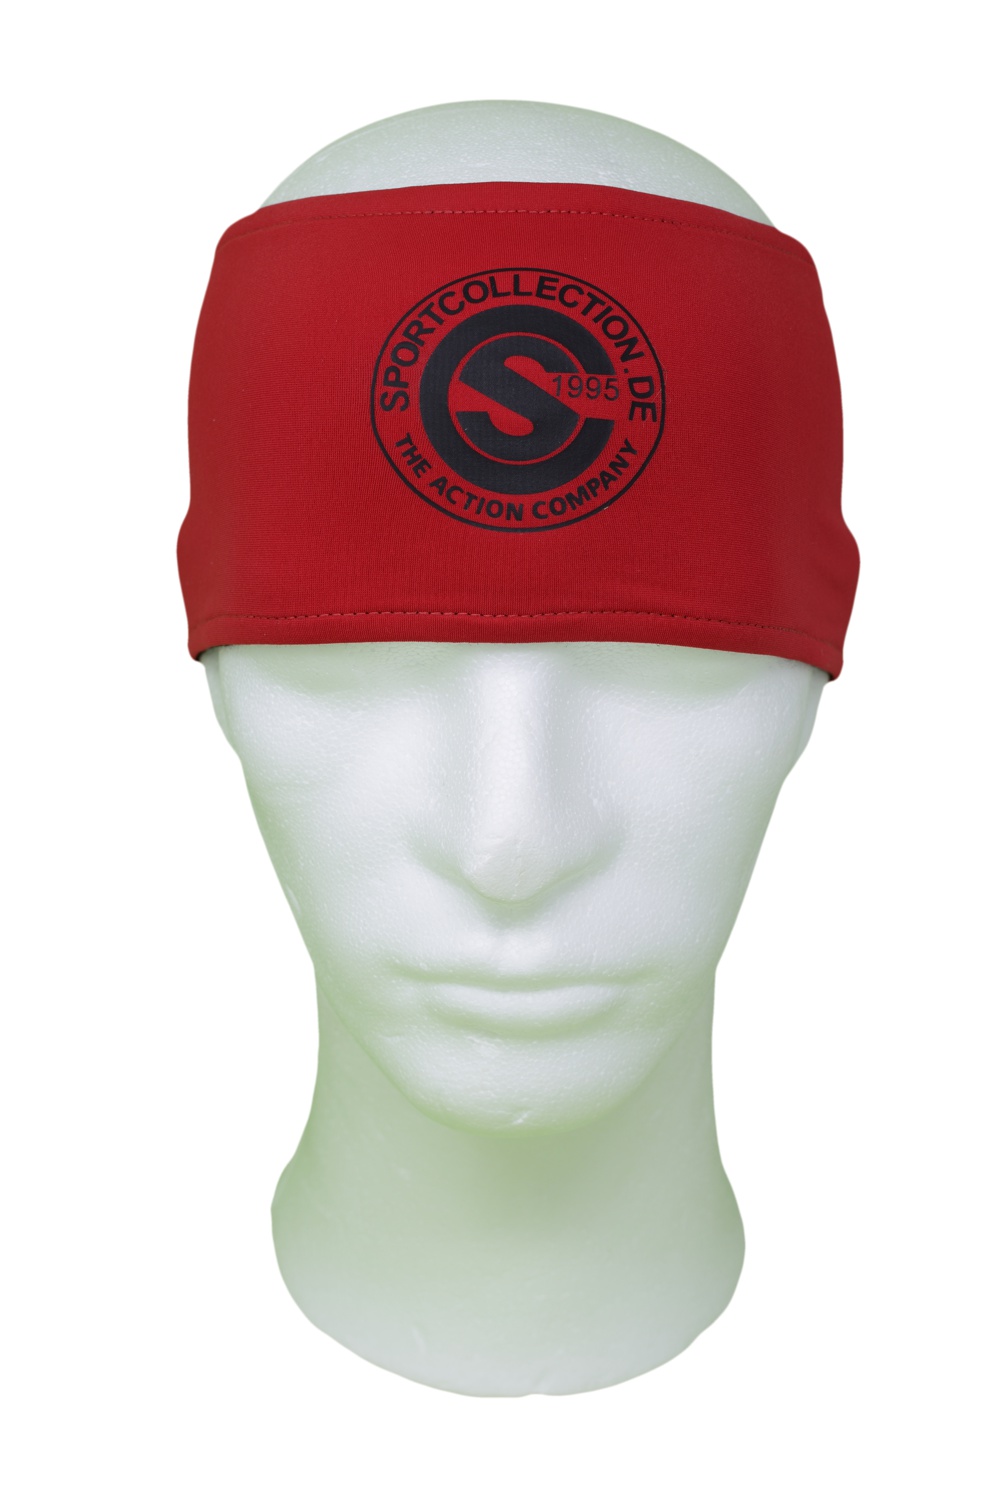 Stöhr Stirnband Rot-Schwarz-Logo